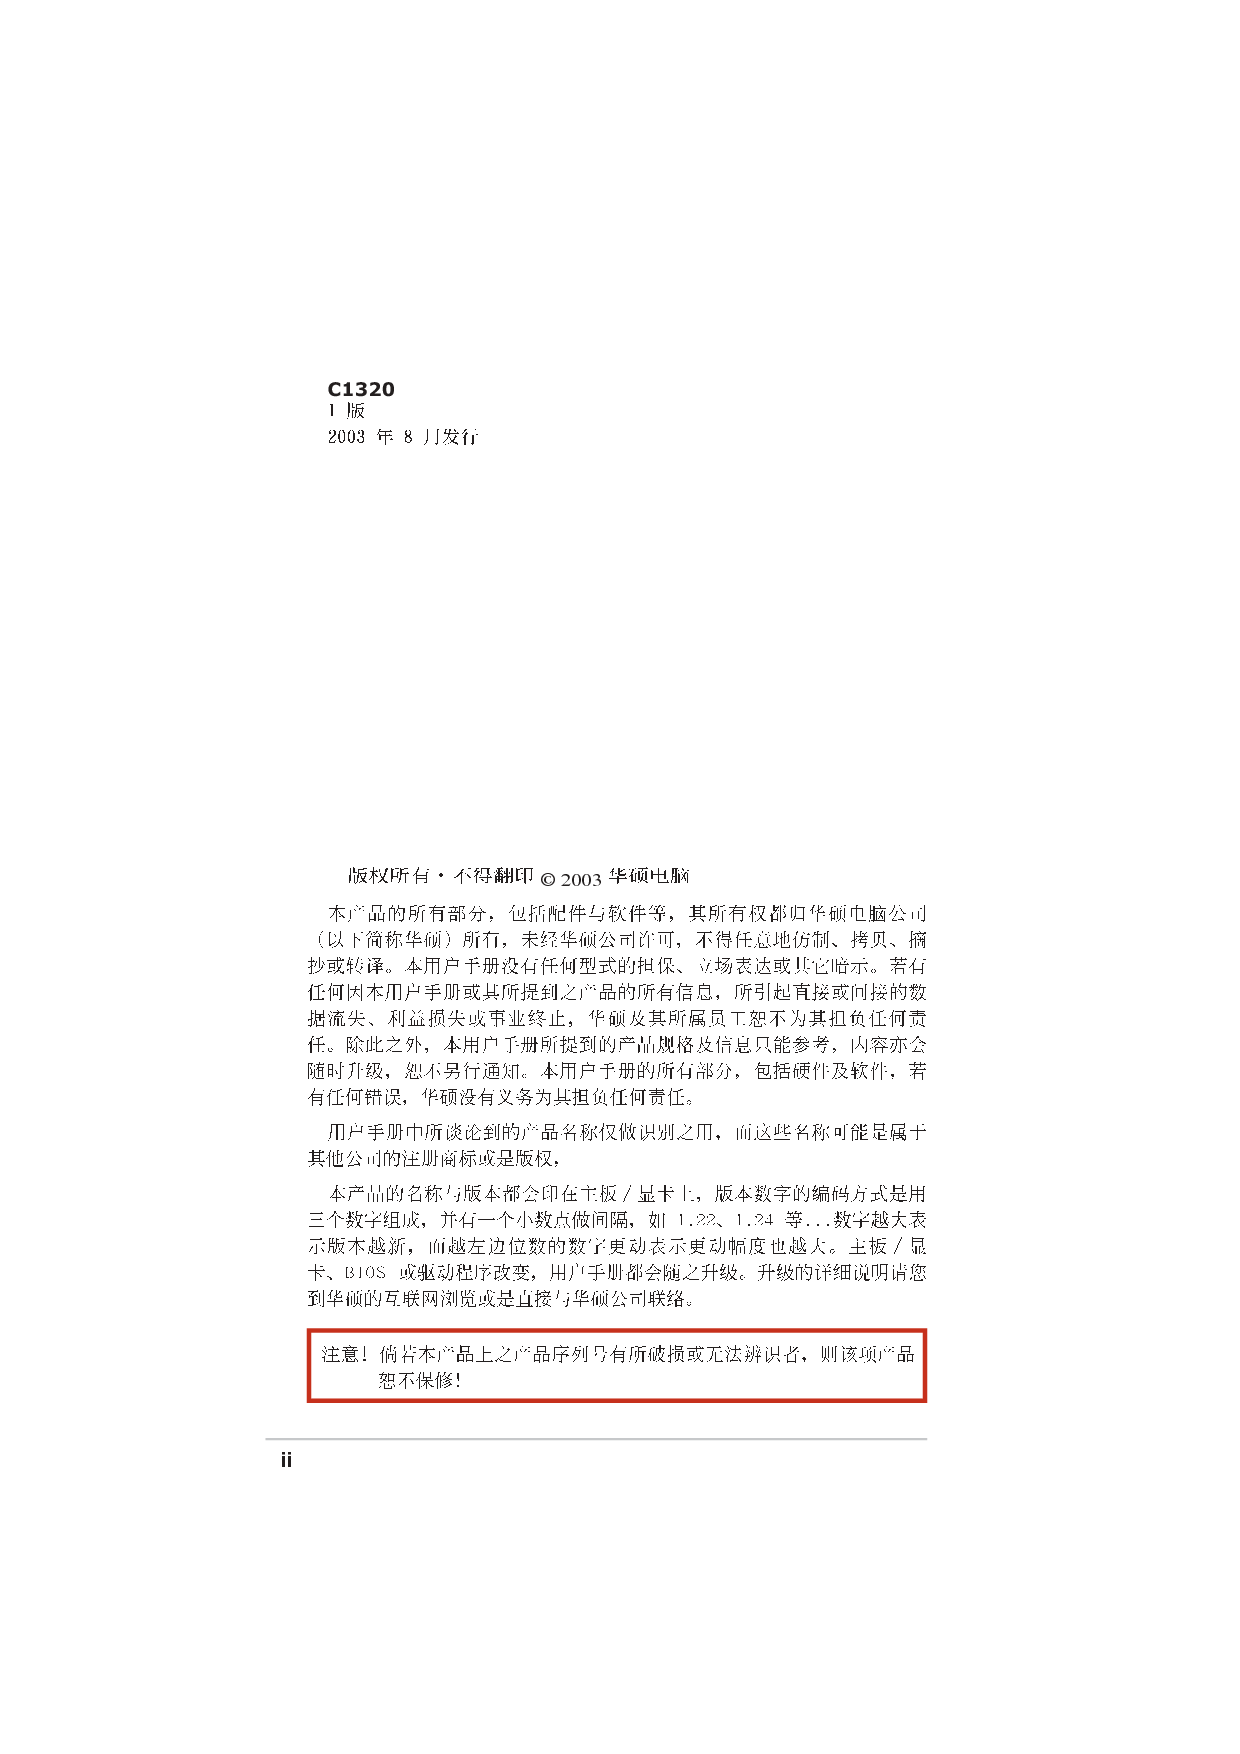 华硕 Asus A7V8X-MX 用户手册 第1页